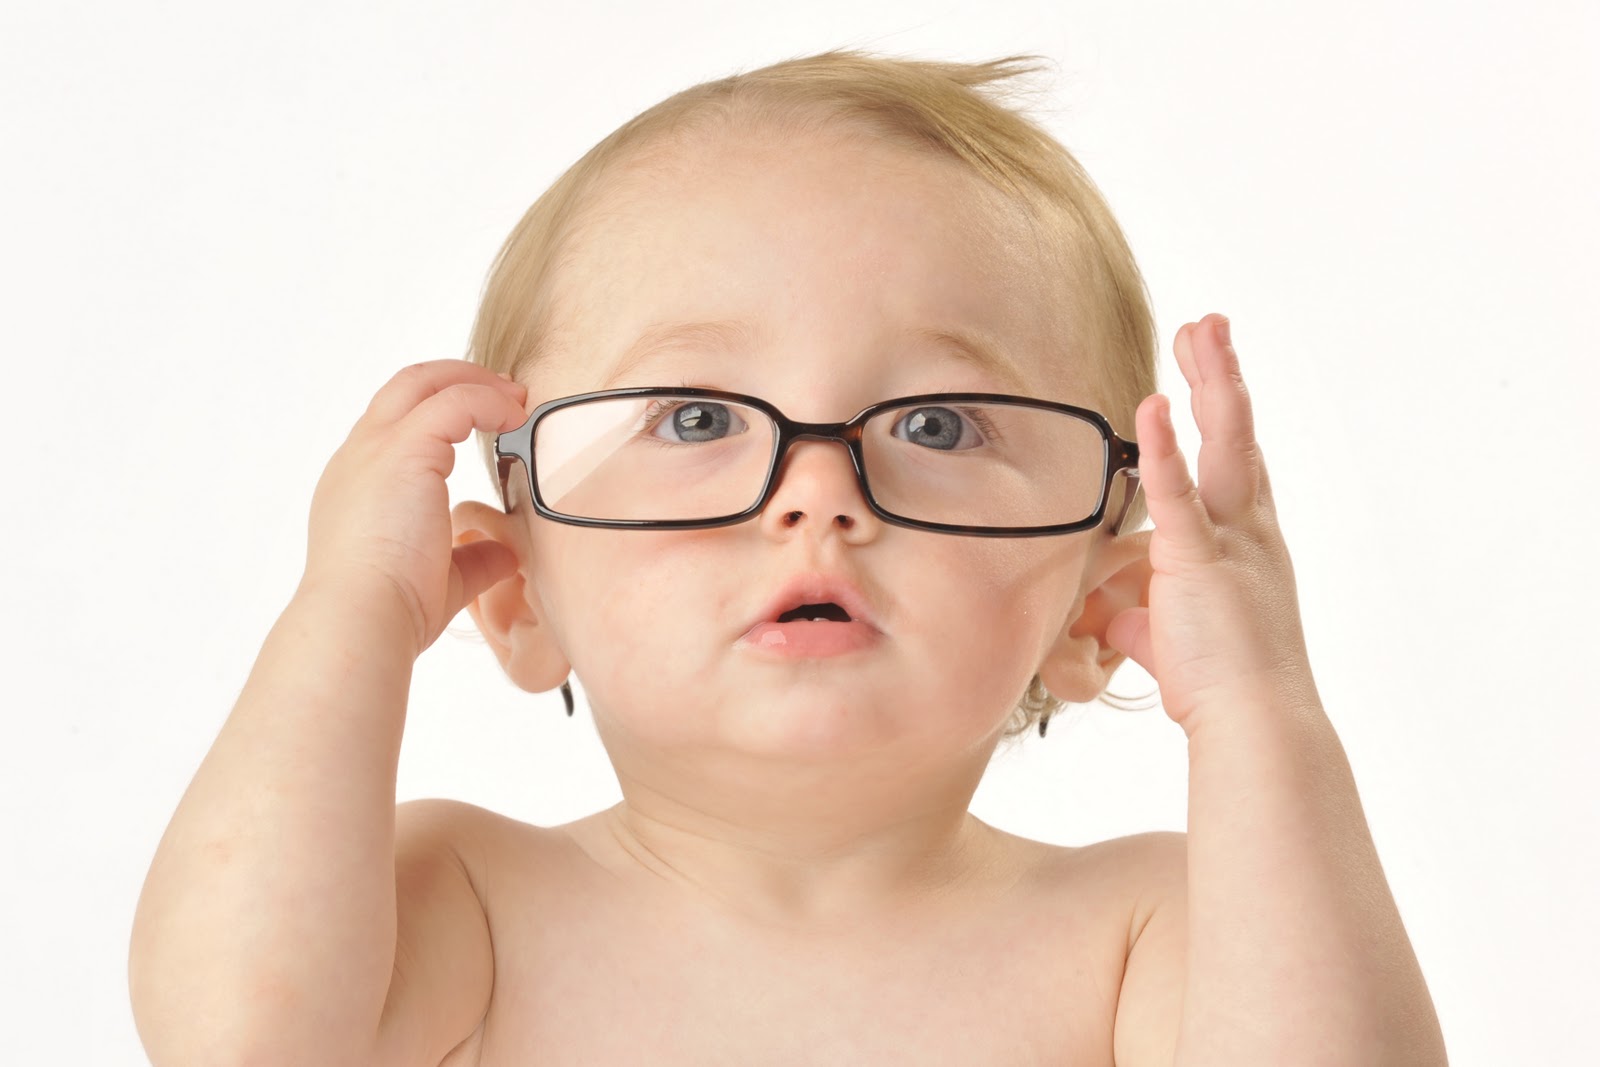 A importância da avaliação oftalmológica na infância